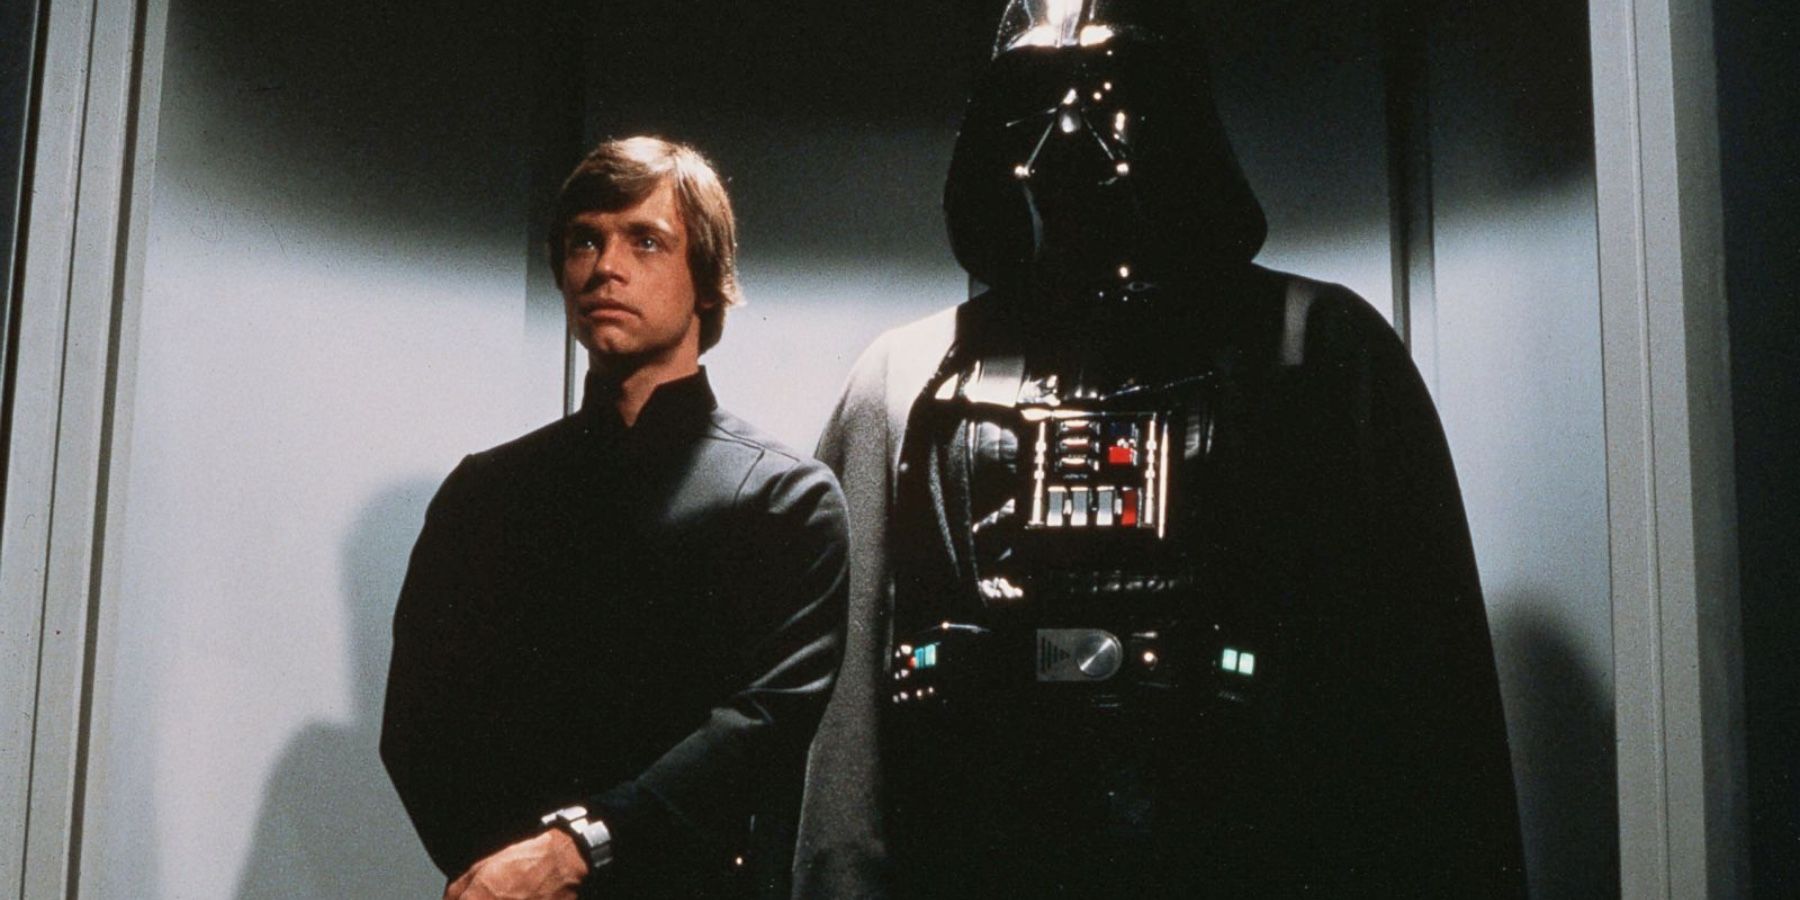 Luke-Skywalker-and-Darth-Vader-in-Star-Wars-Episode-6-Return-of-the-Jedi